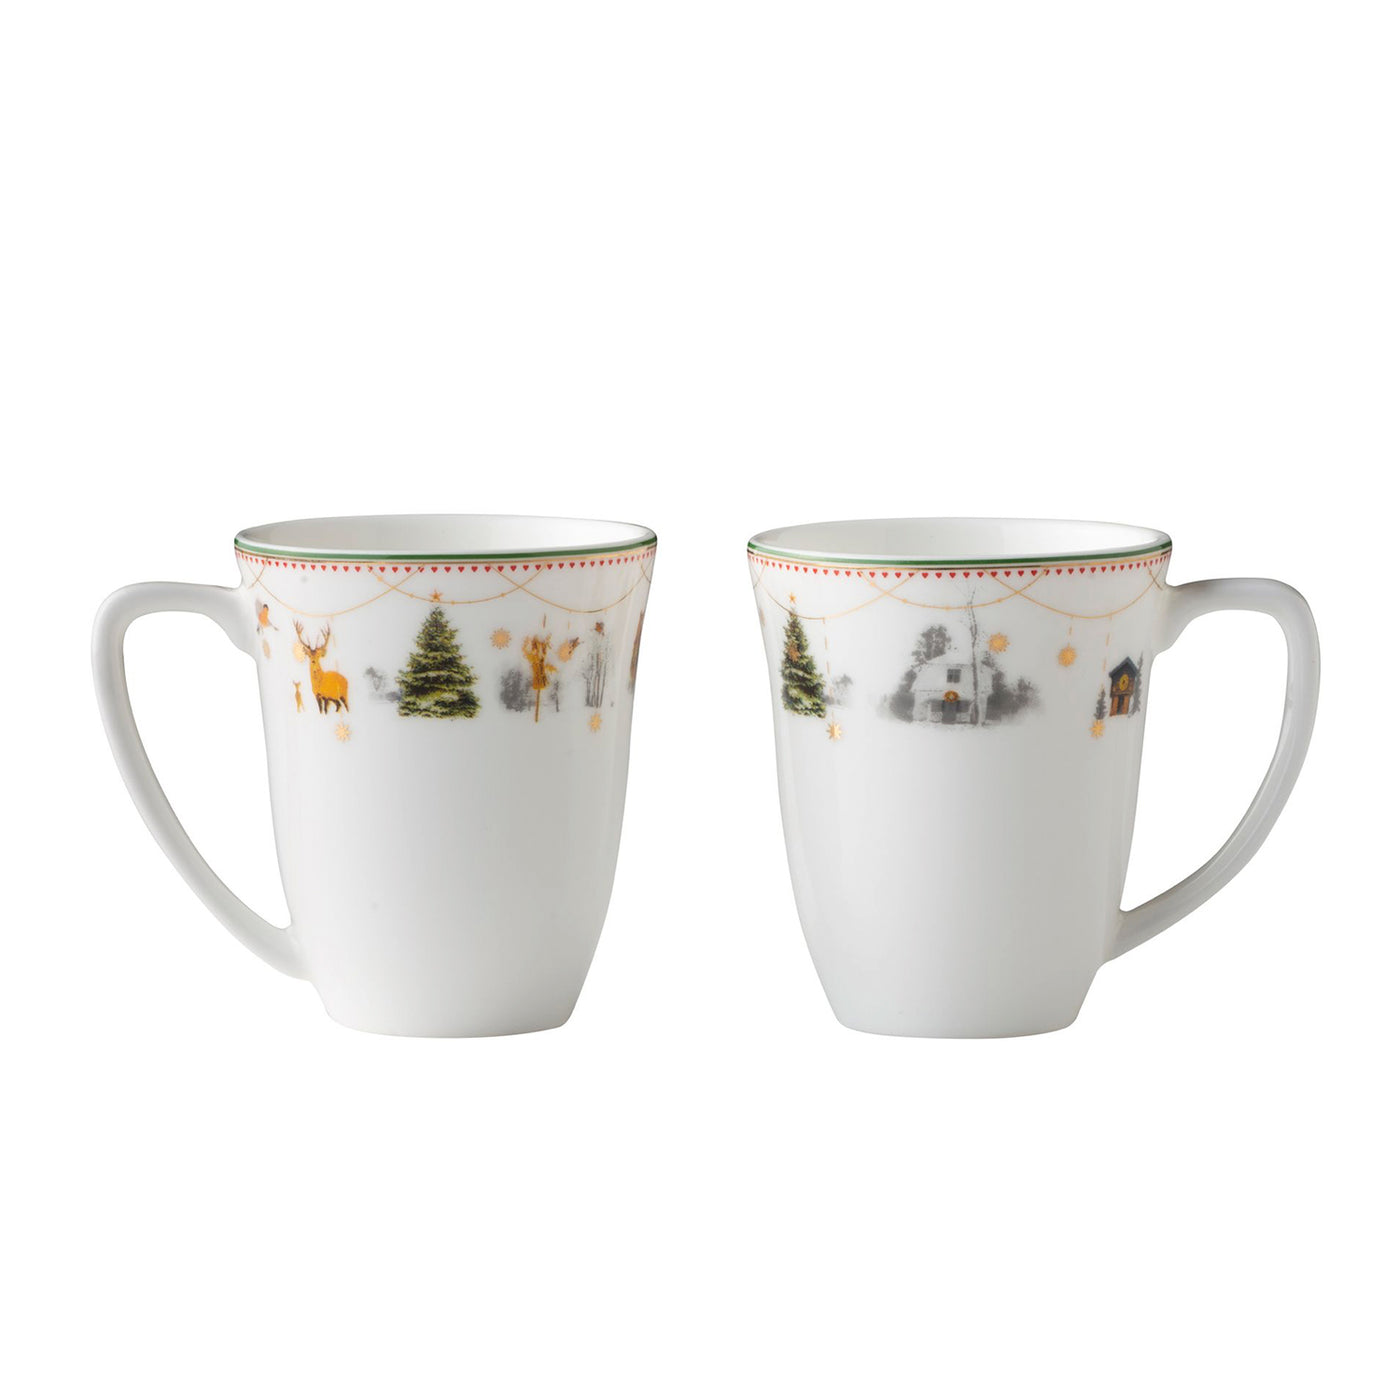 JULEMORGEN set of two mugs